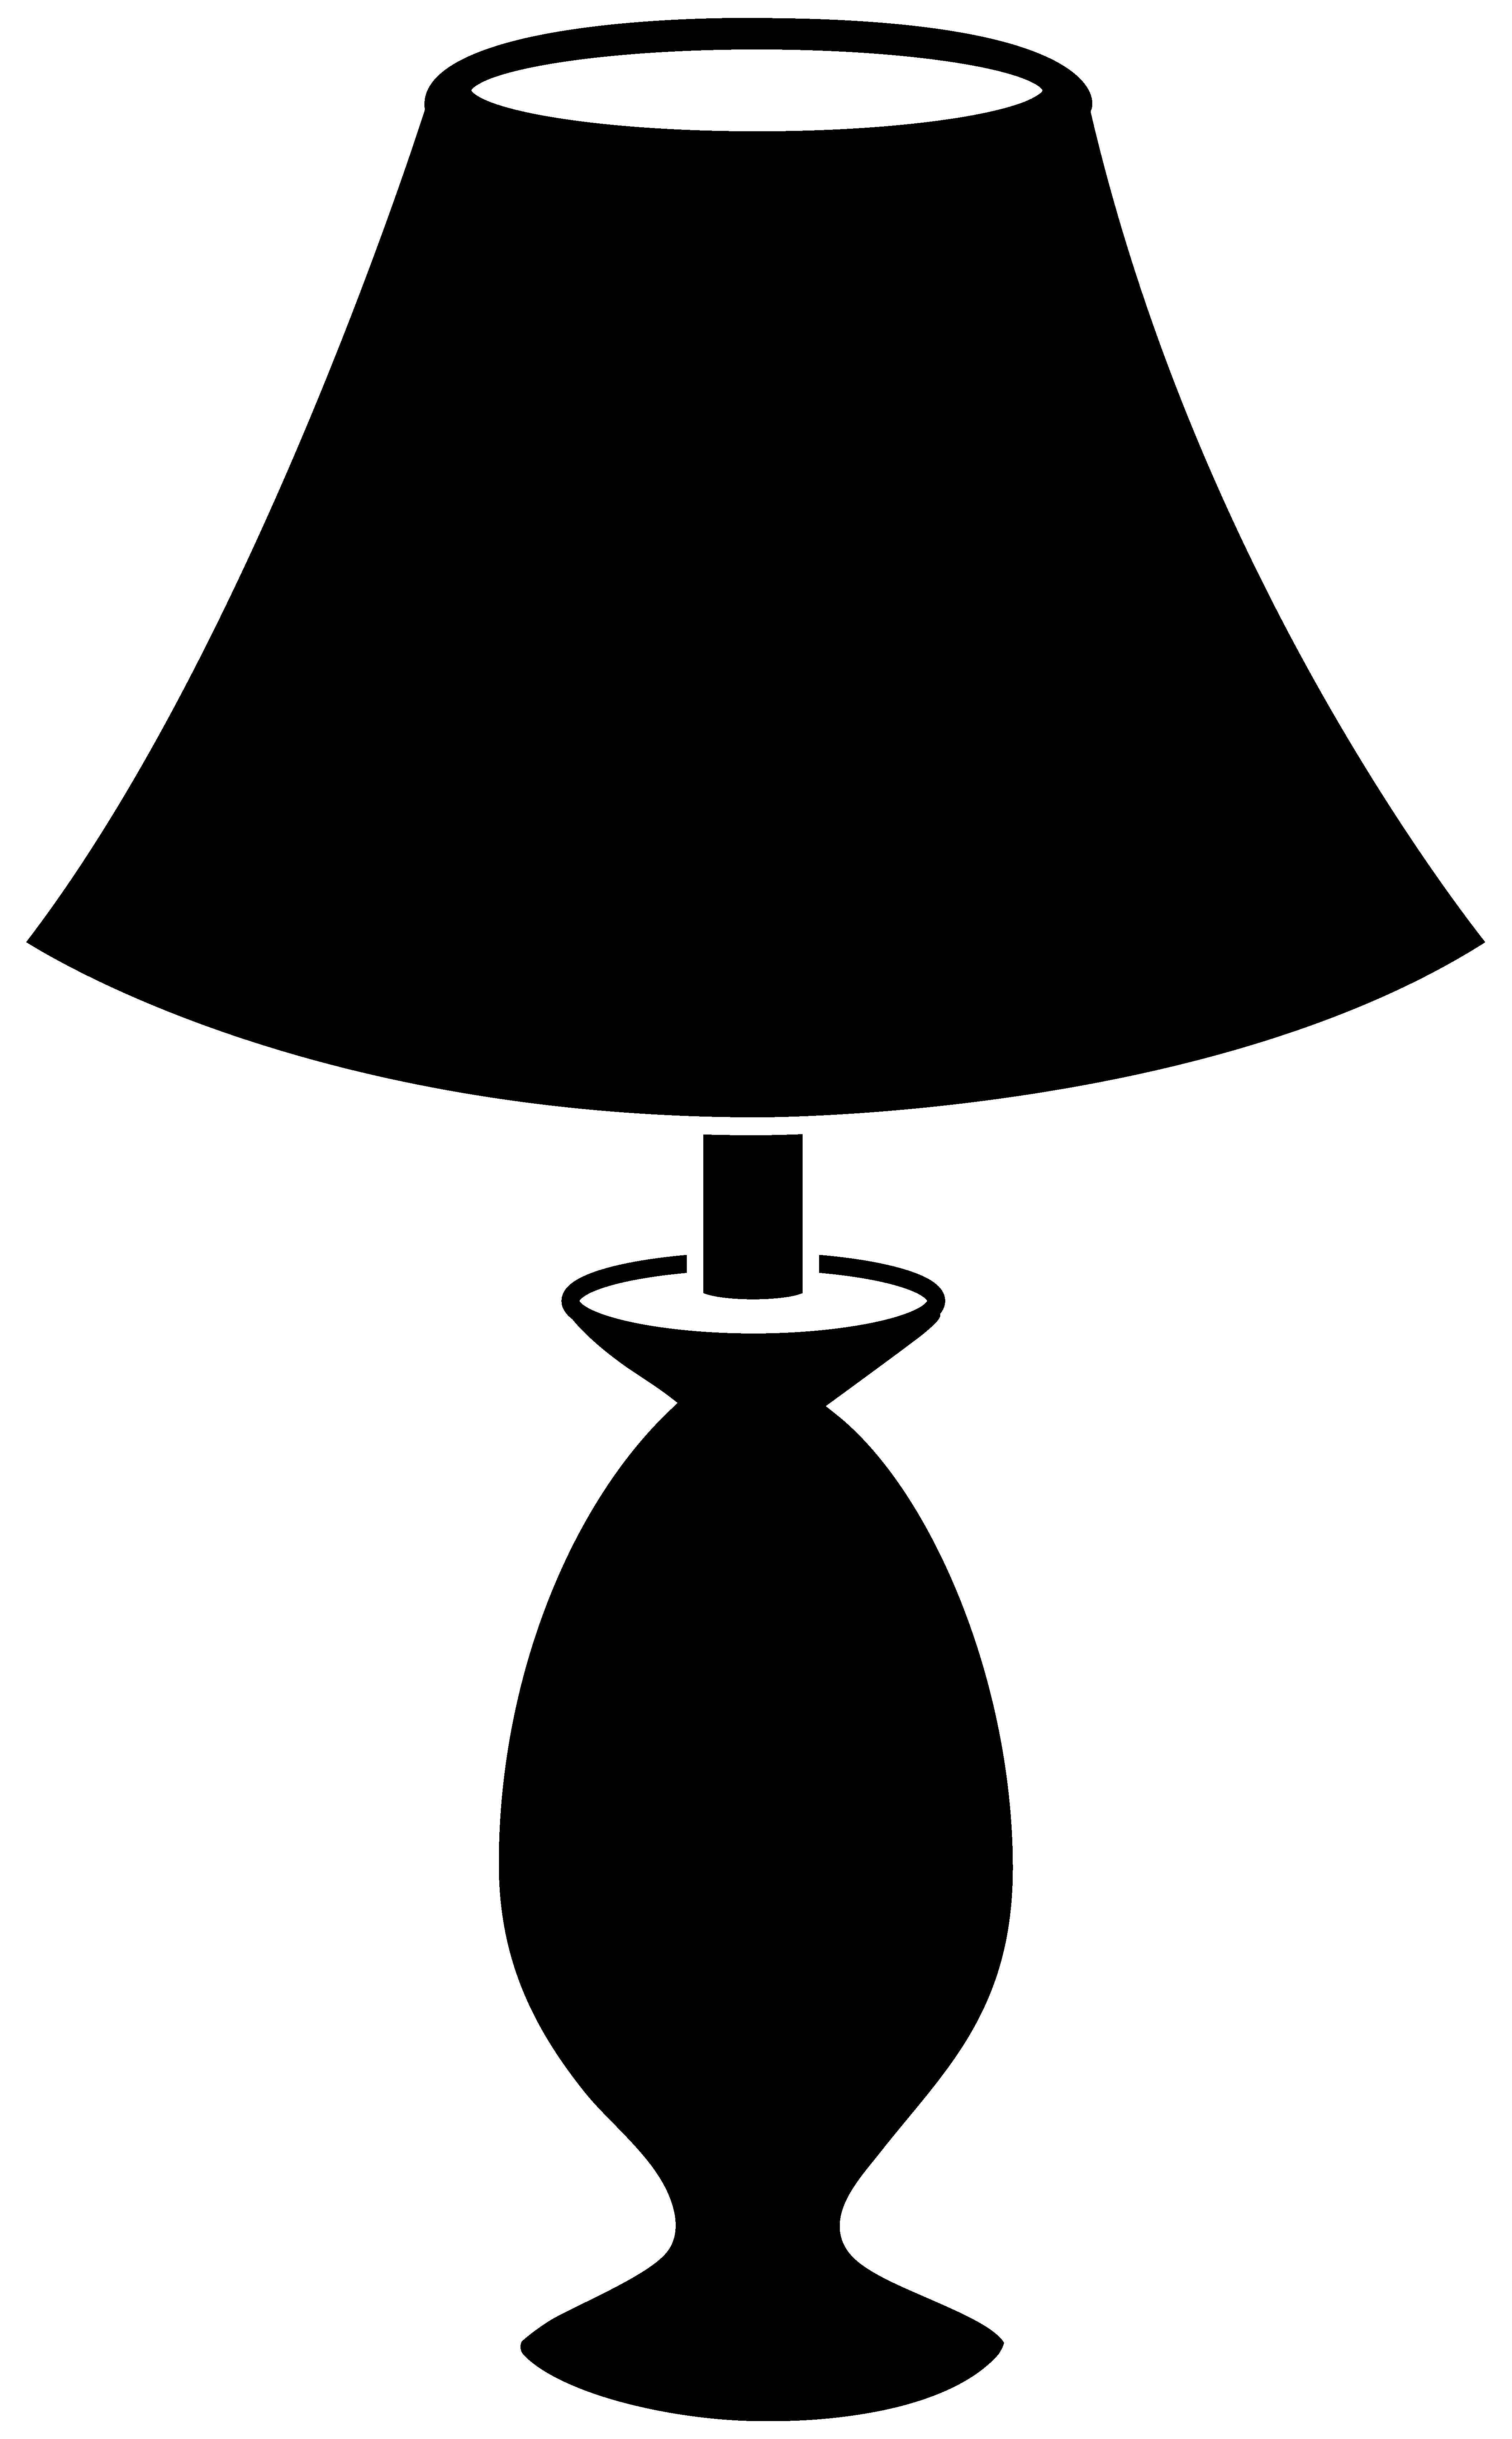 Lamp clipart - ClipartFest